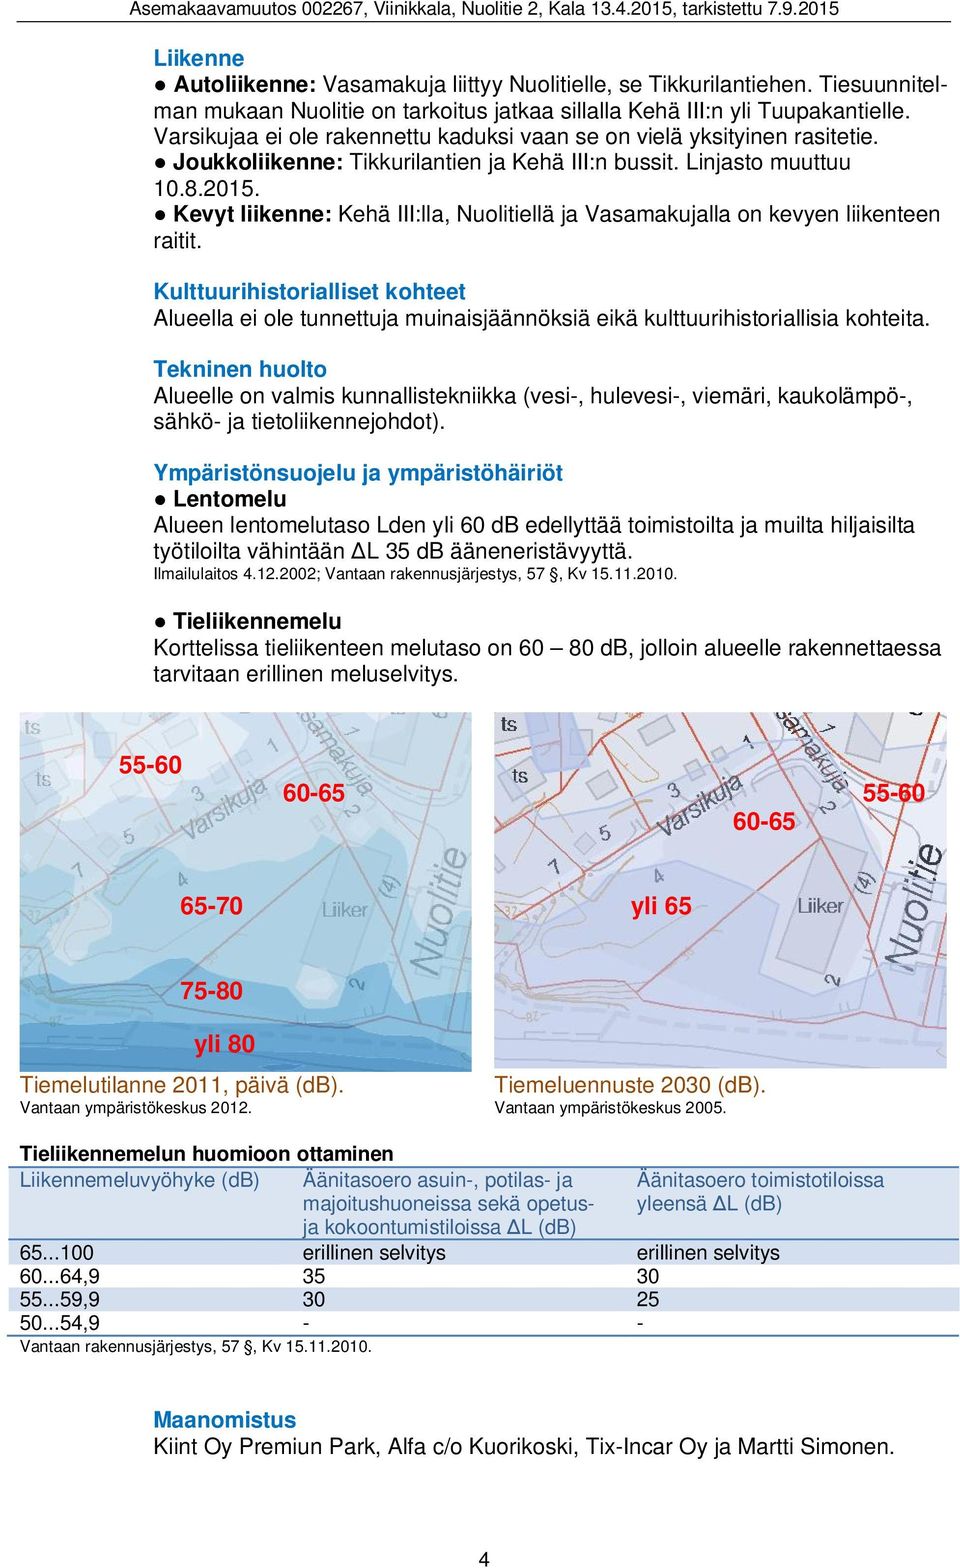 Kevyt liikenne: Kehä III:lla, Nuolitiellä ja Vasamakujalla on kevyen liikenteen raitit.